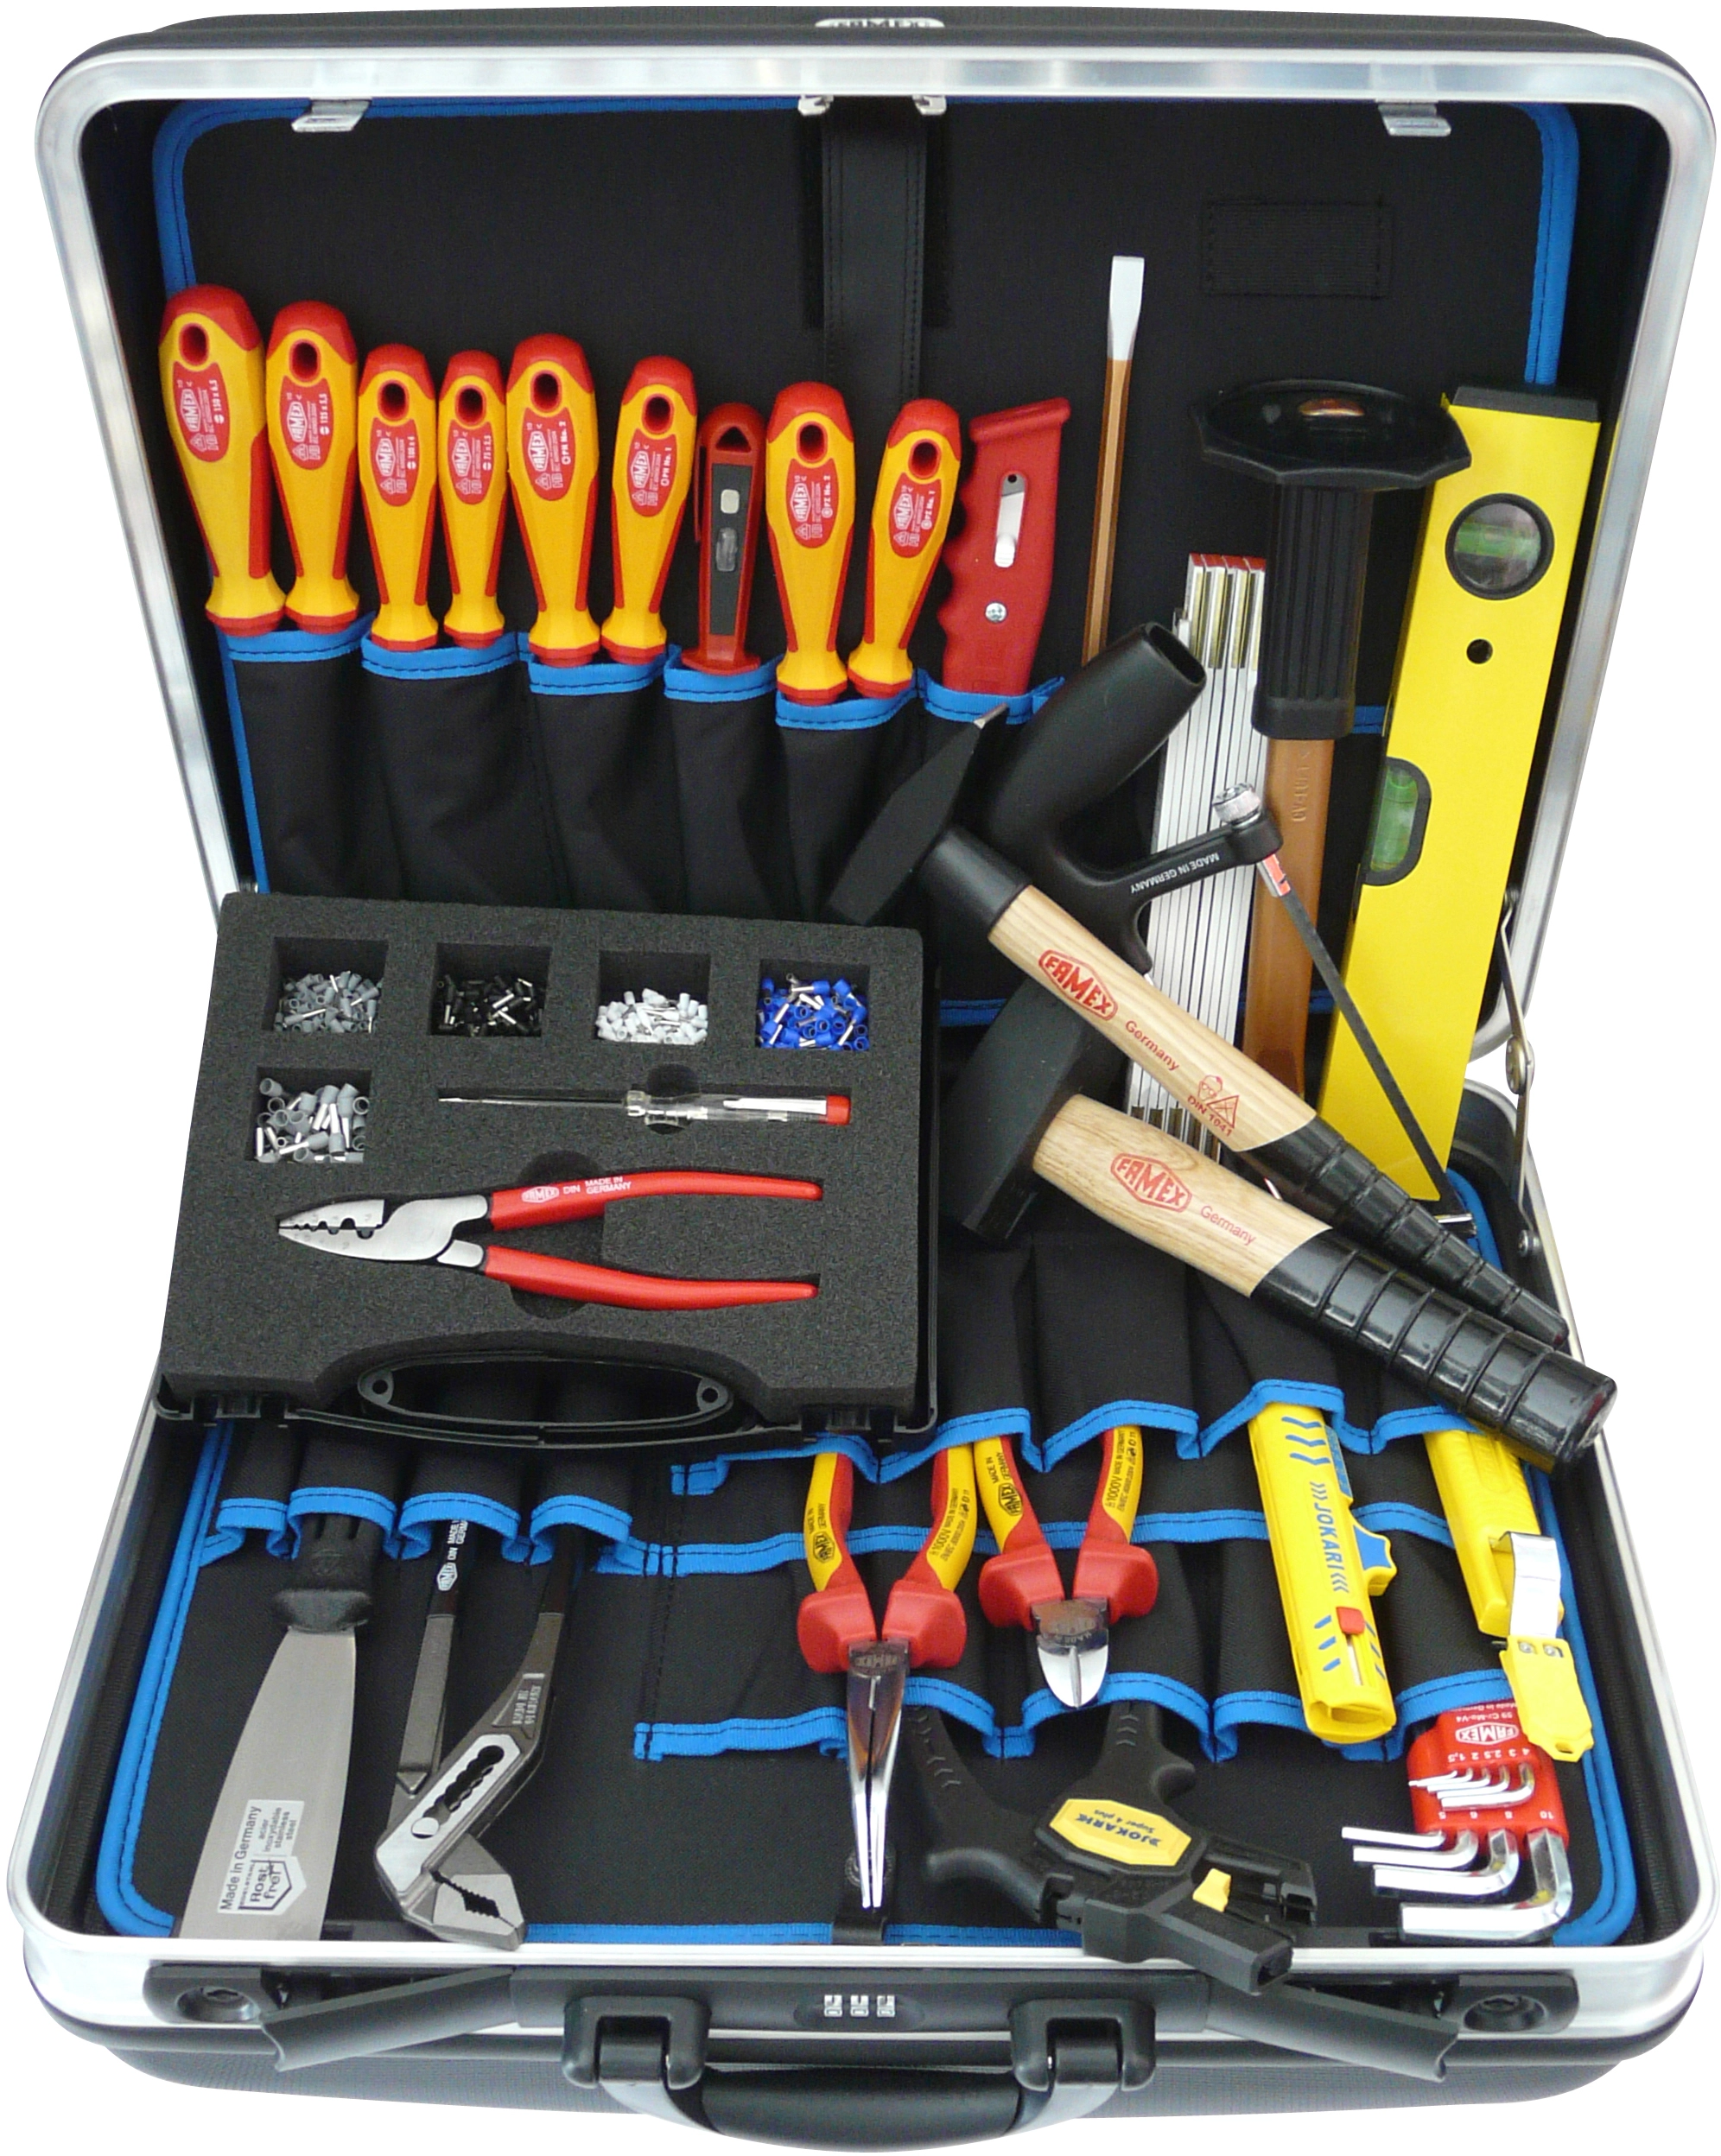 Famex Elektriker Werkzeugkoffer 636-08 kaufen bei OBI | Werkzeug-Sets